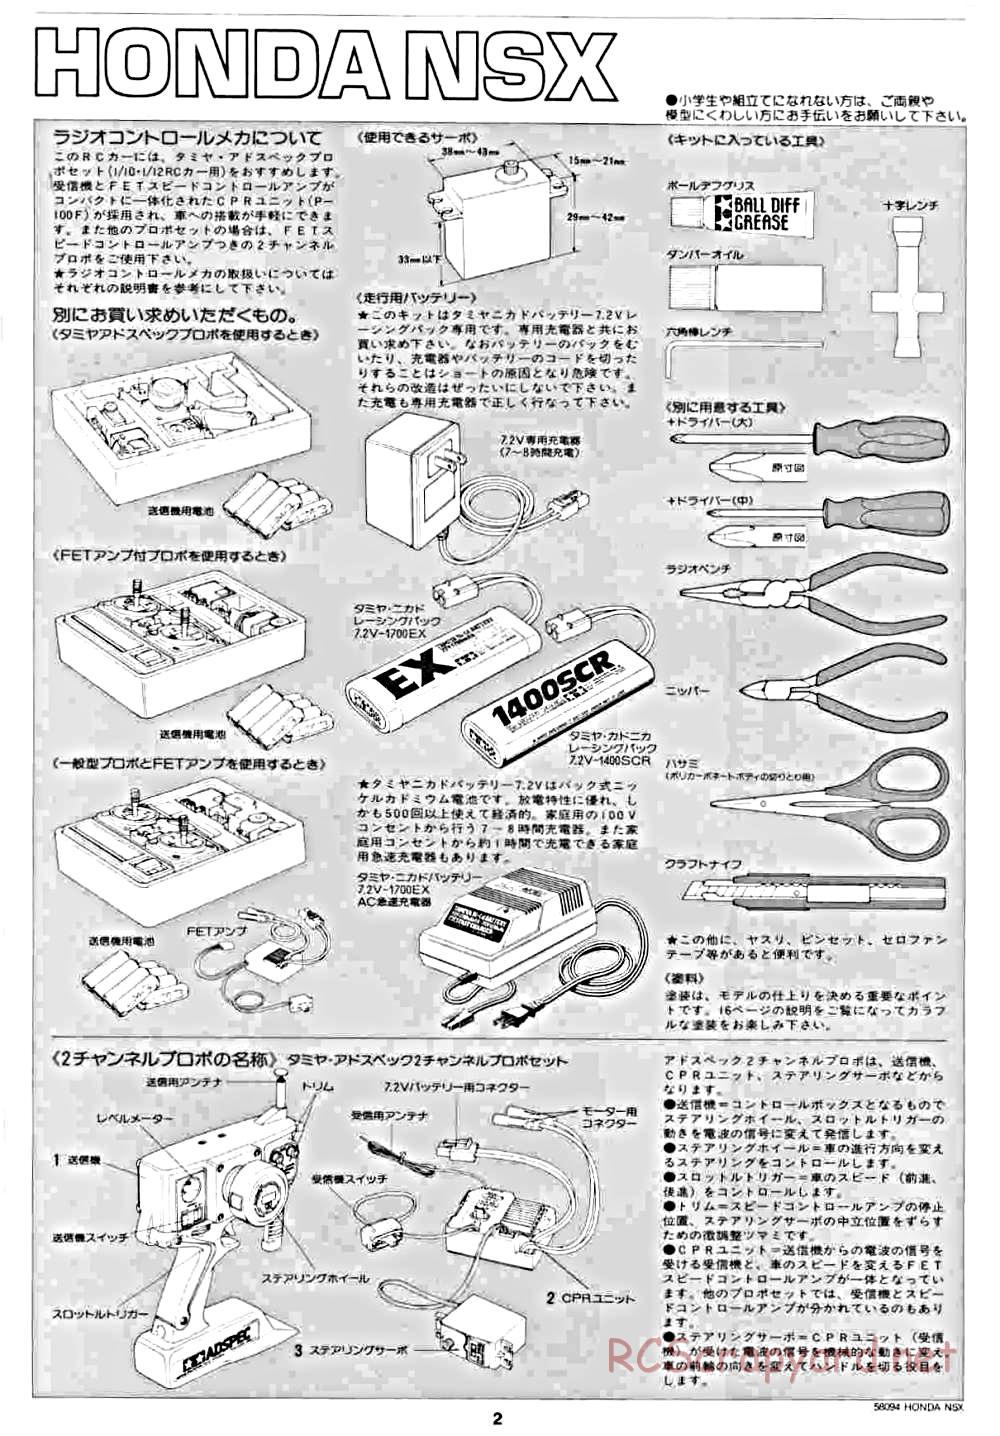 Tamiya - Honda NSX - 58094 - Manual - Page 2